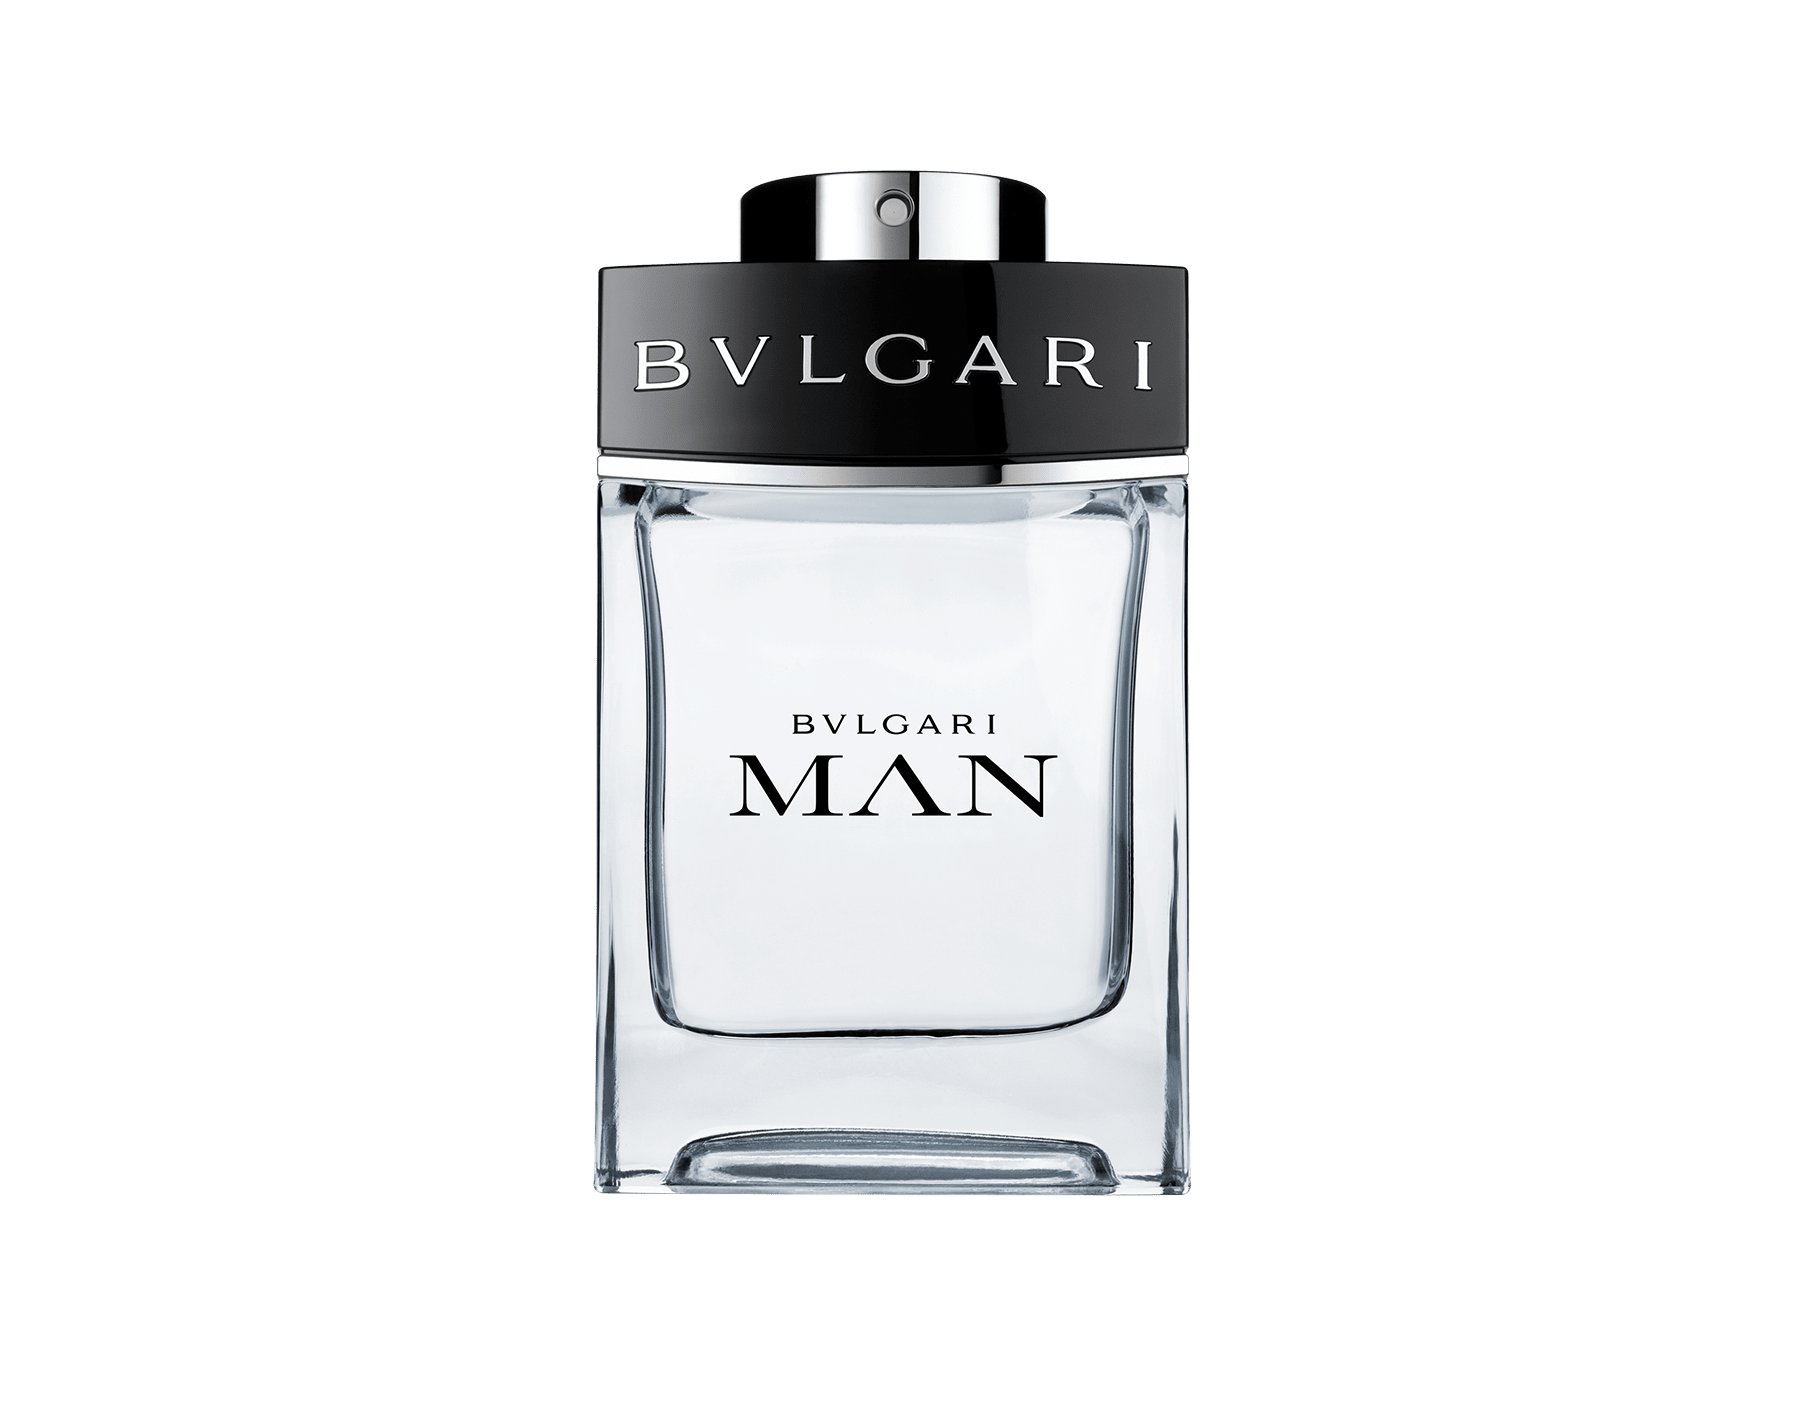 bvlgari man discontinued